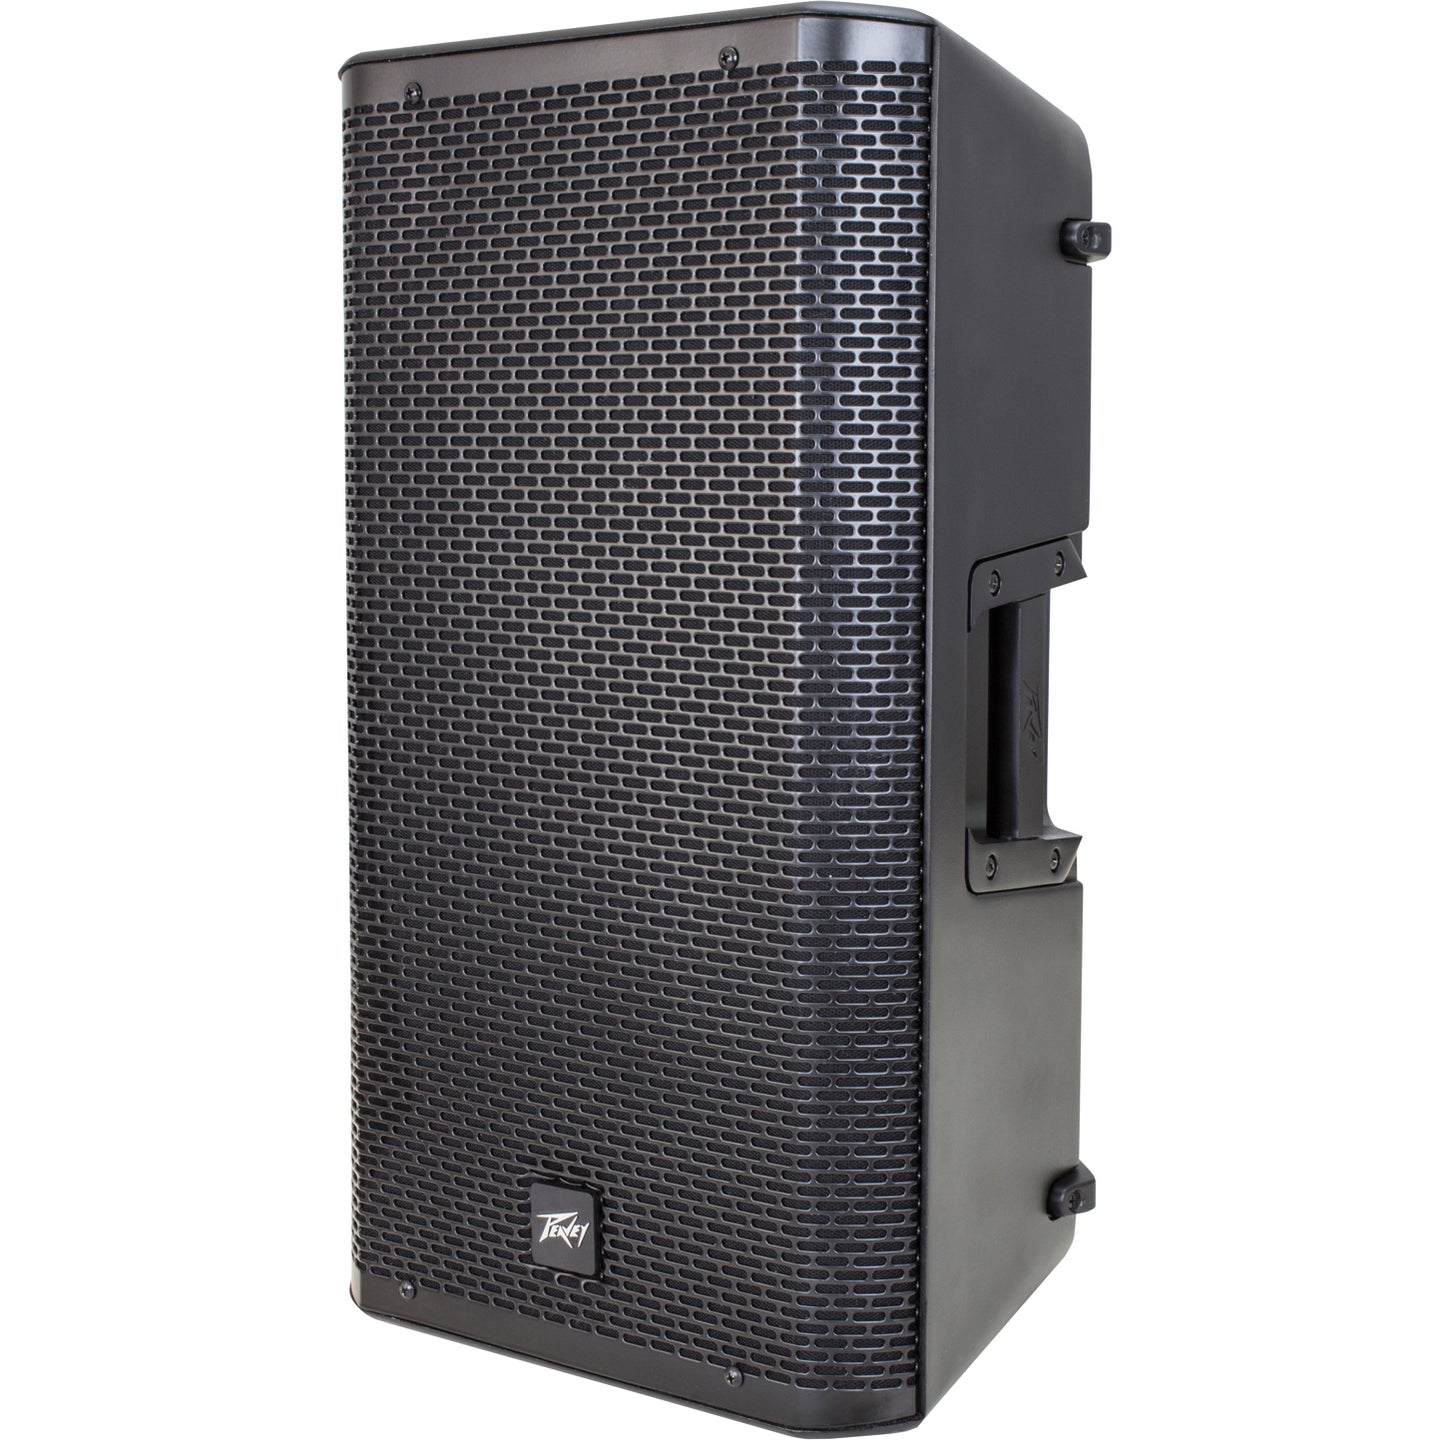 Peavey RBN 110 active full-range speaker